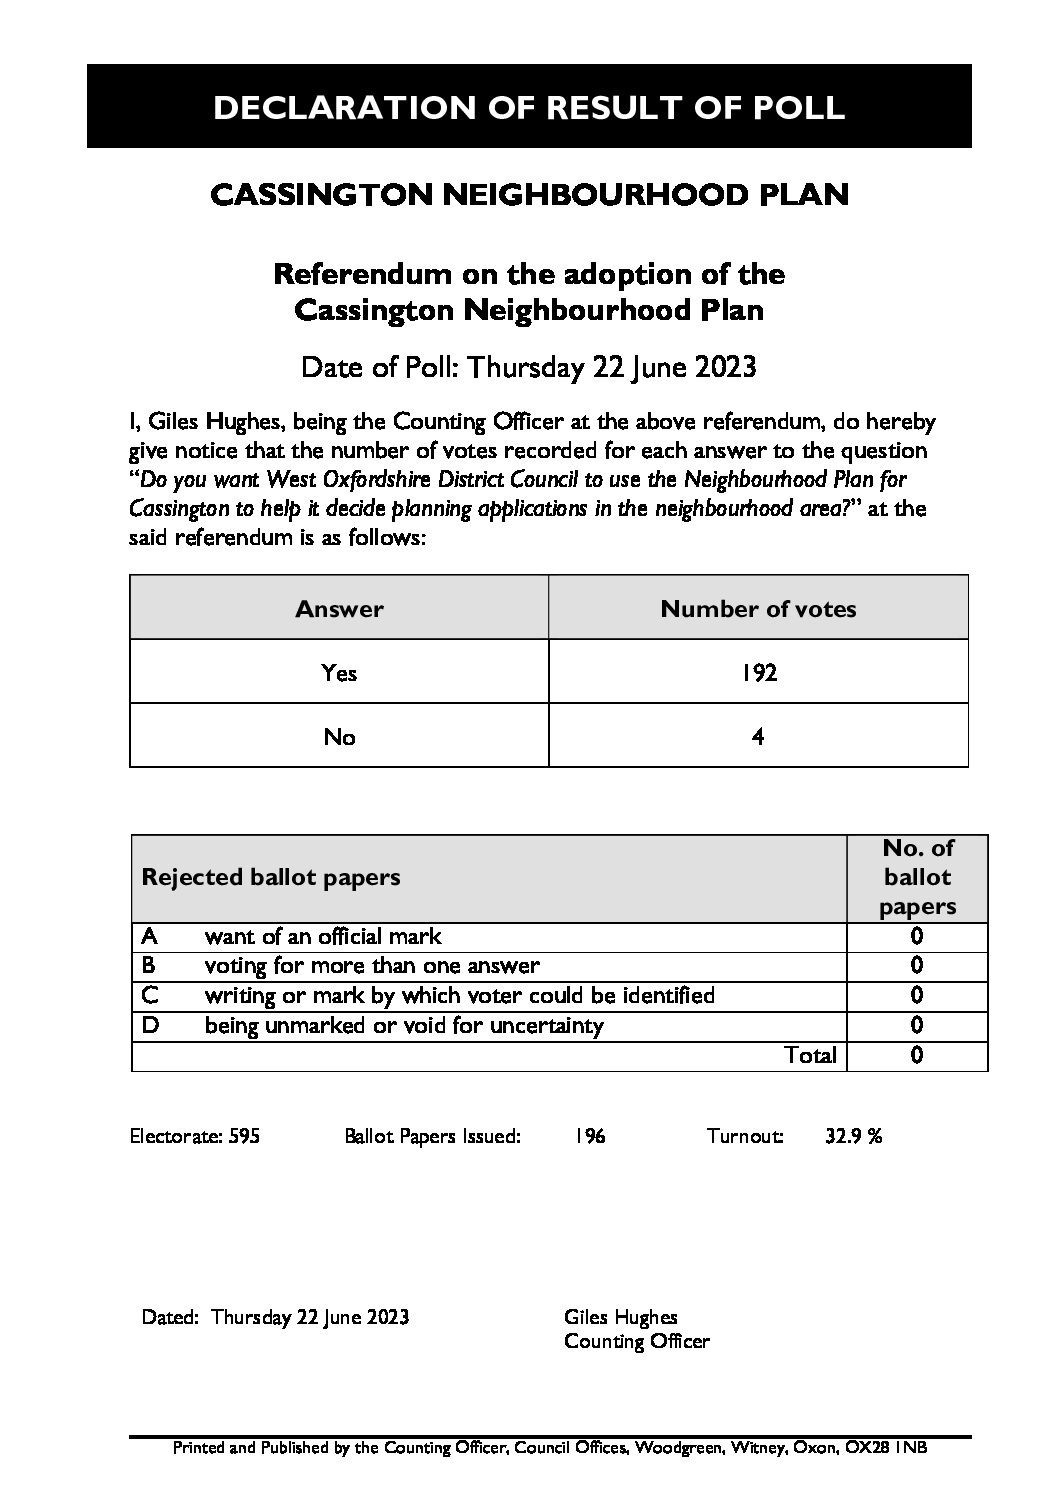 Cassington Neighbourhood Plan Referendums – Thursday 22 June 2023